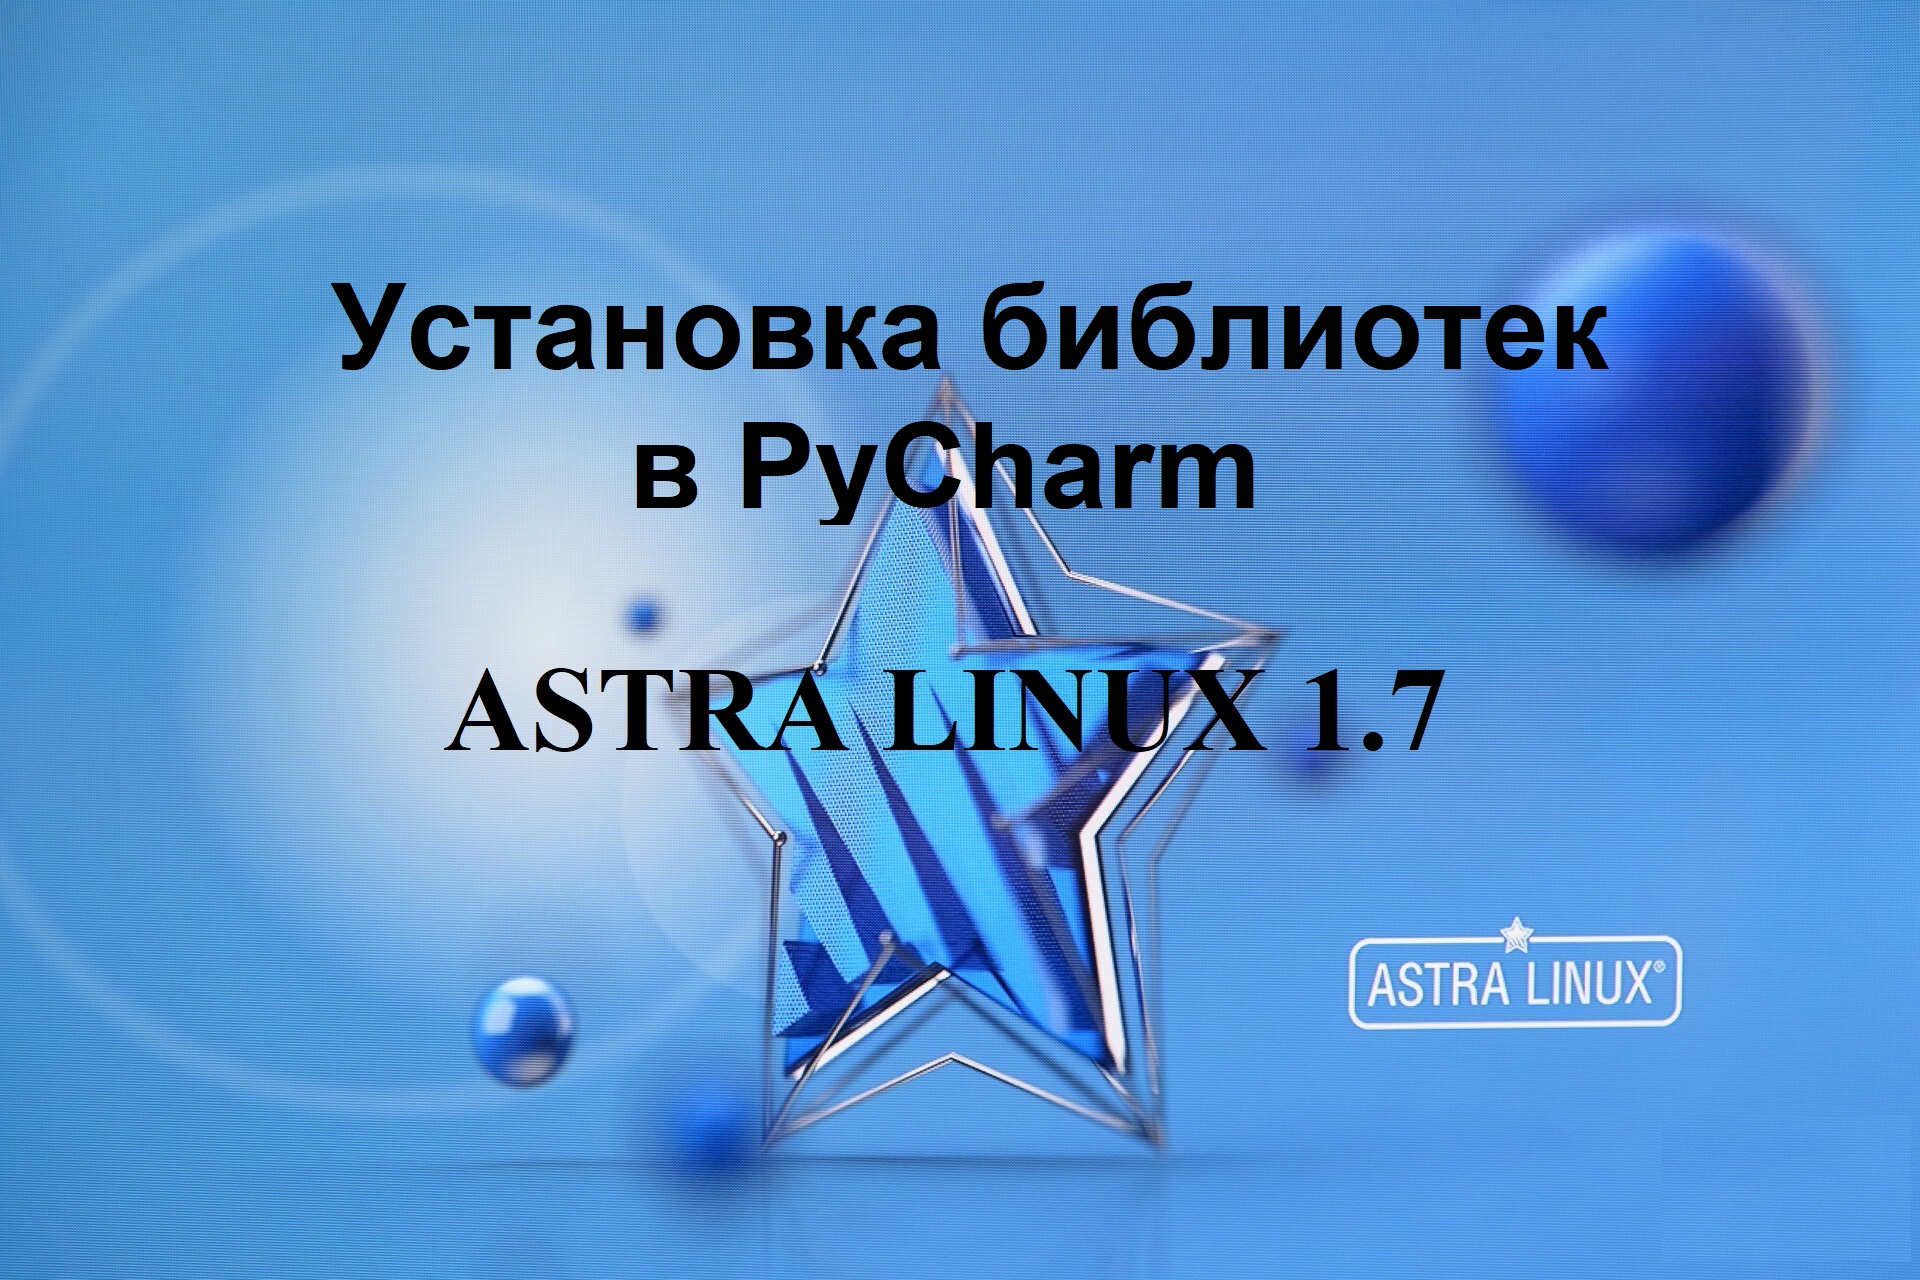 Установка библиотек в PyCharm в Астра Линукс